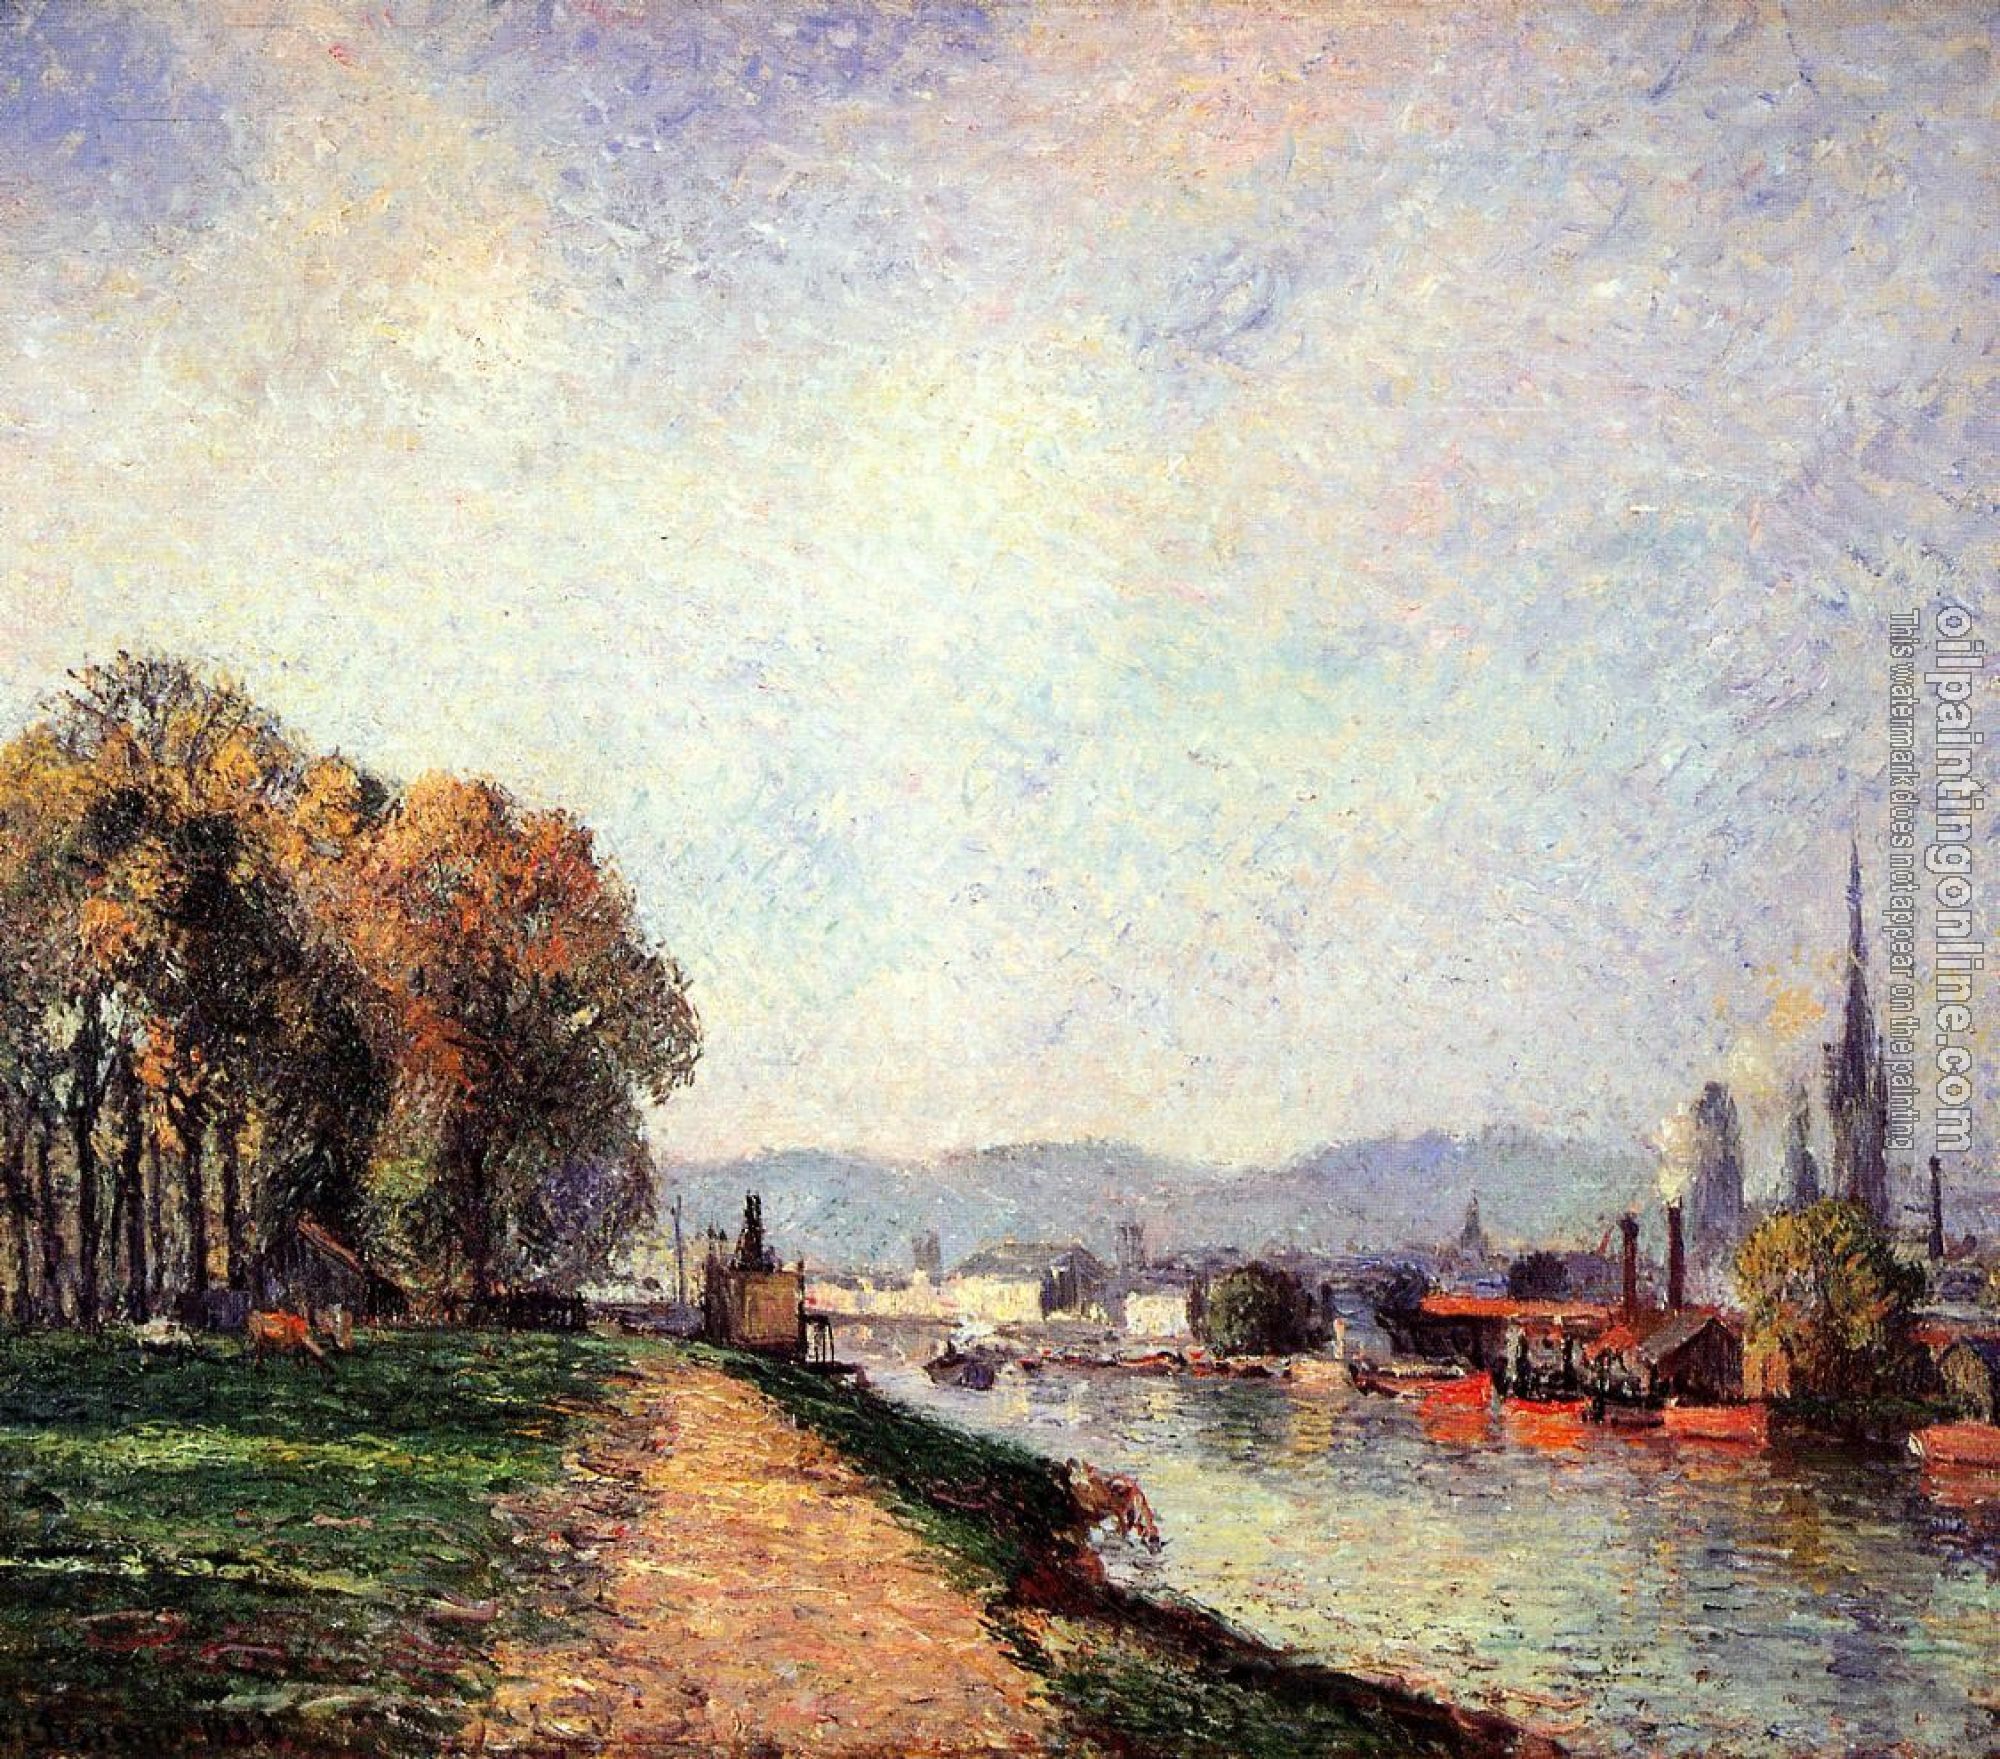 Pissarro, Camille - View of Rouen